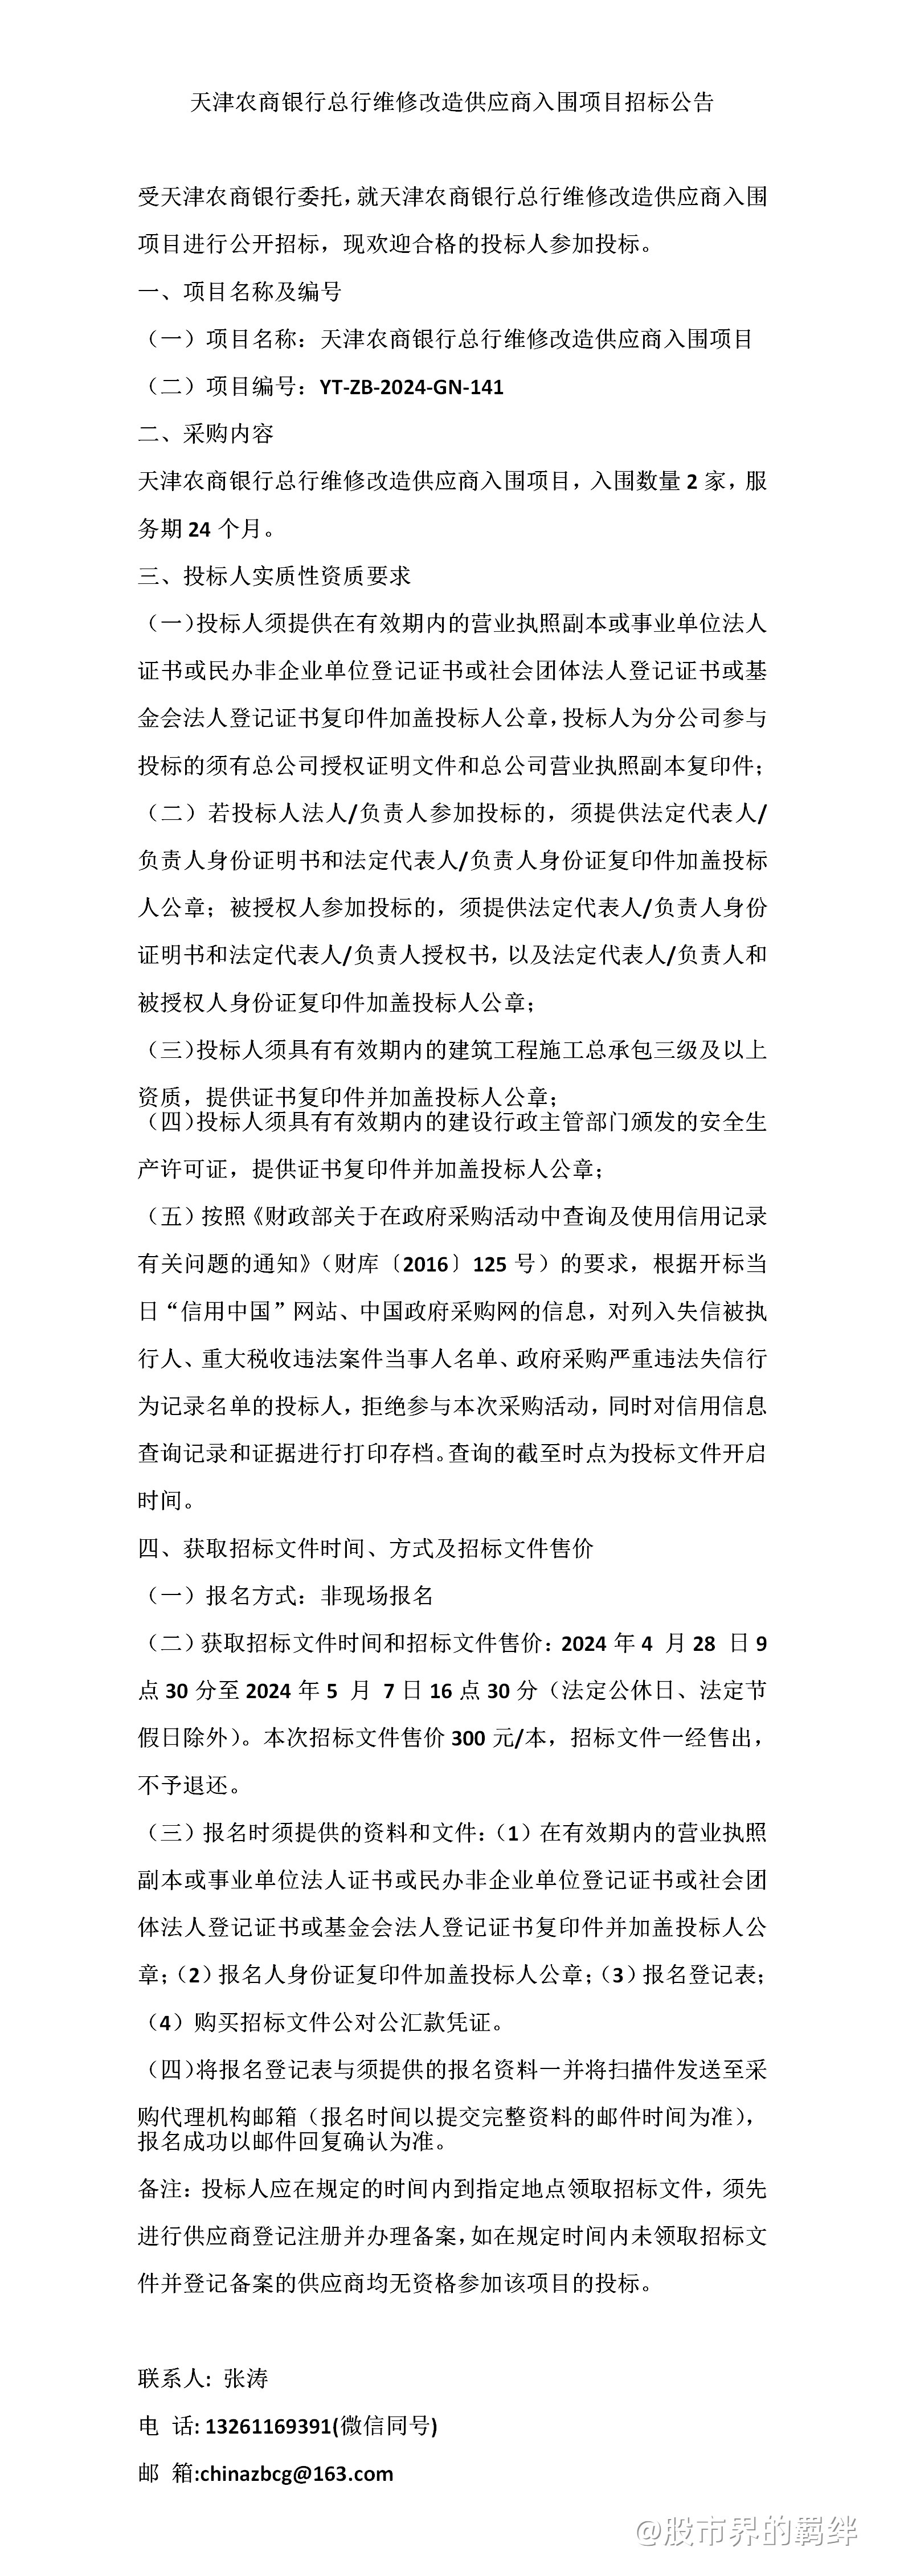 天津农商银行总行维修改造供应商入围项目招标公告